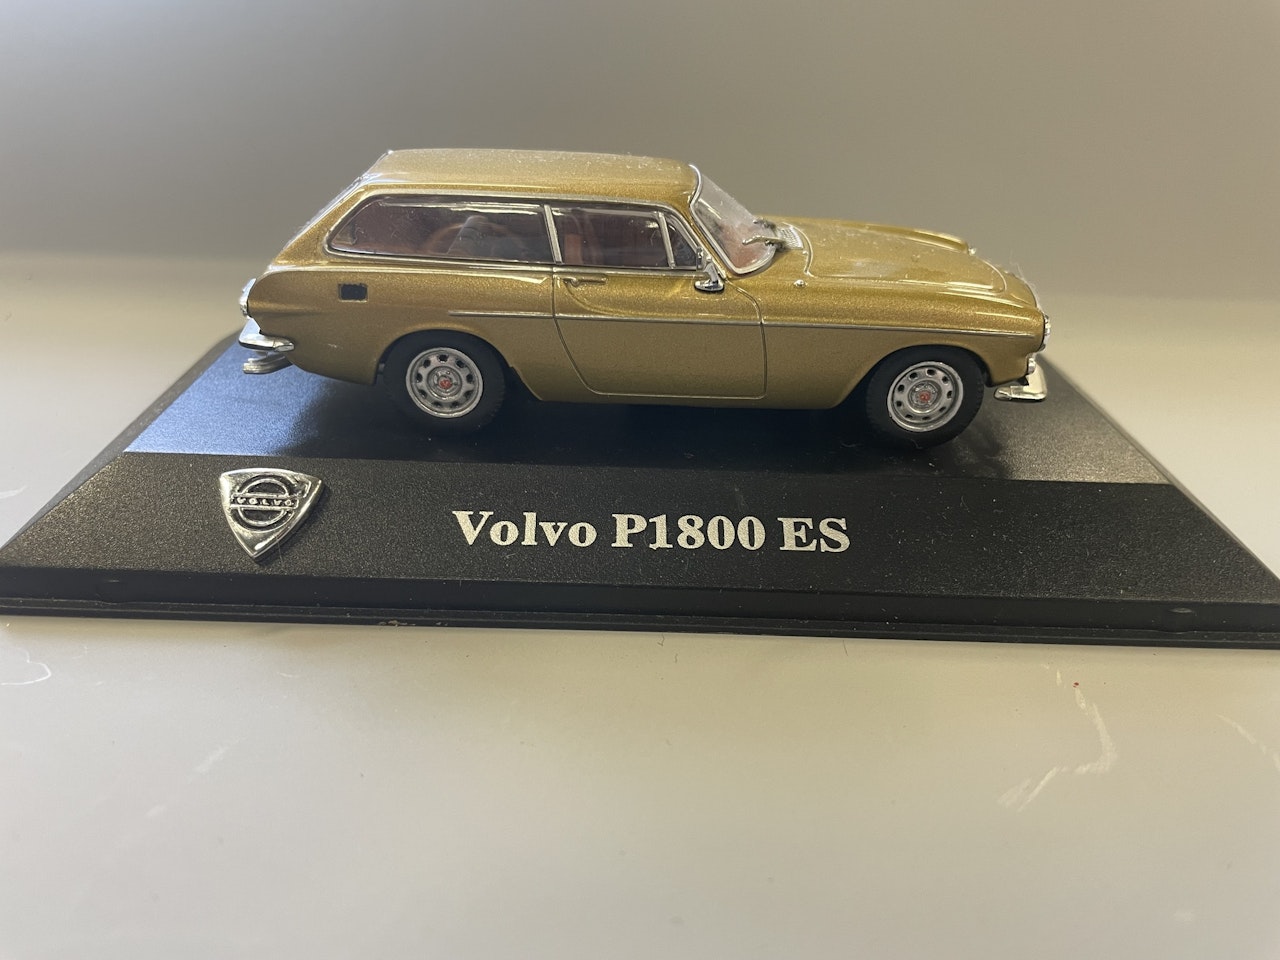 Volvo P1800 Es